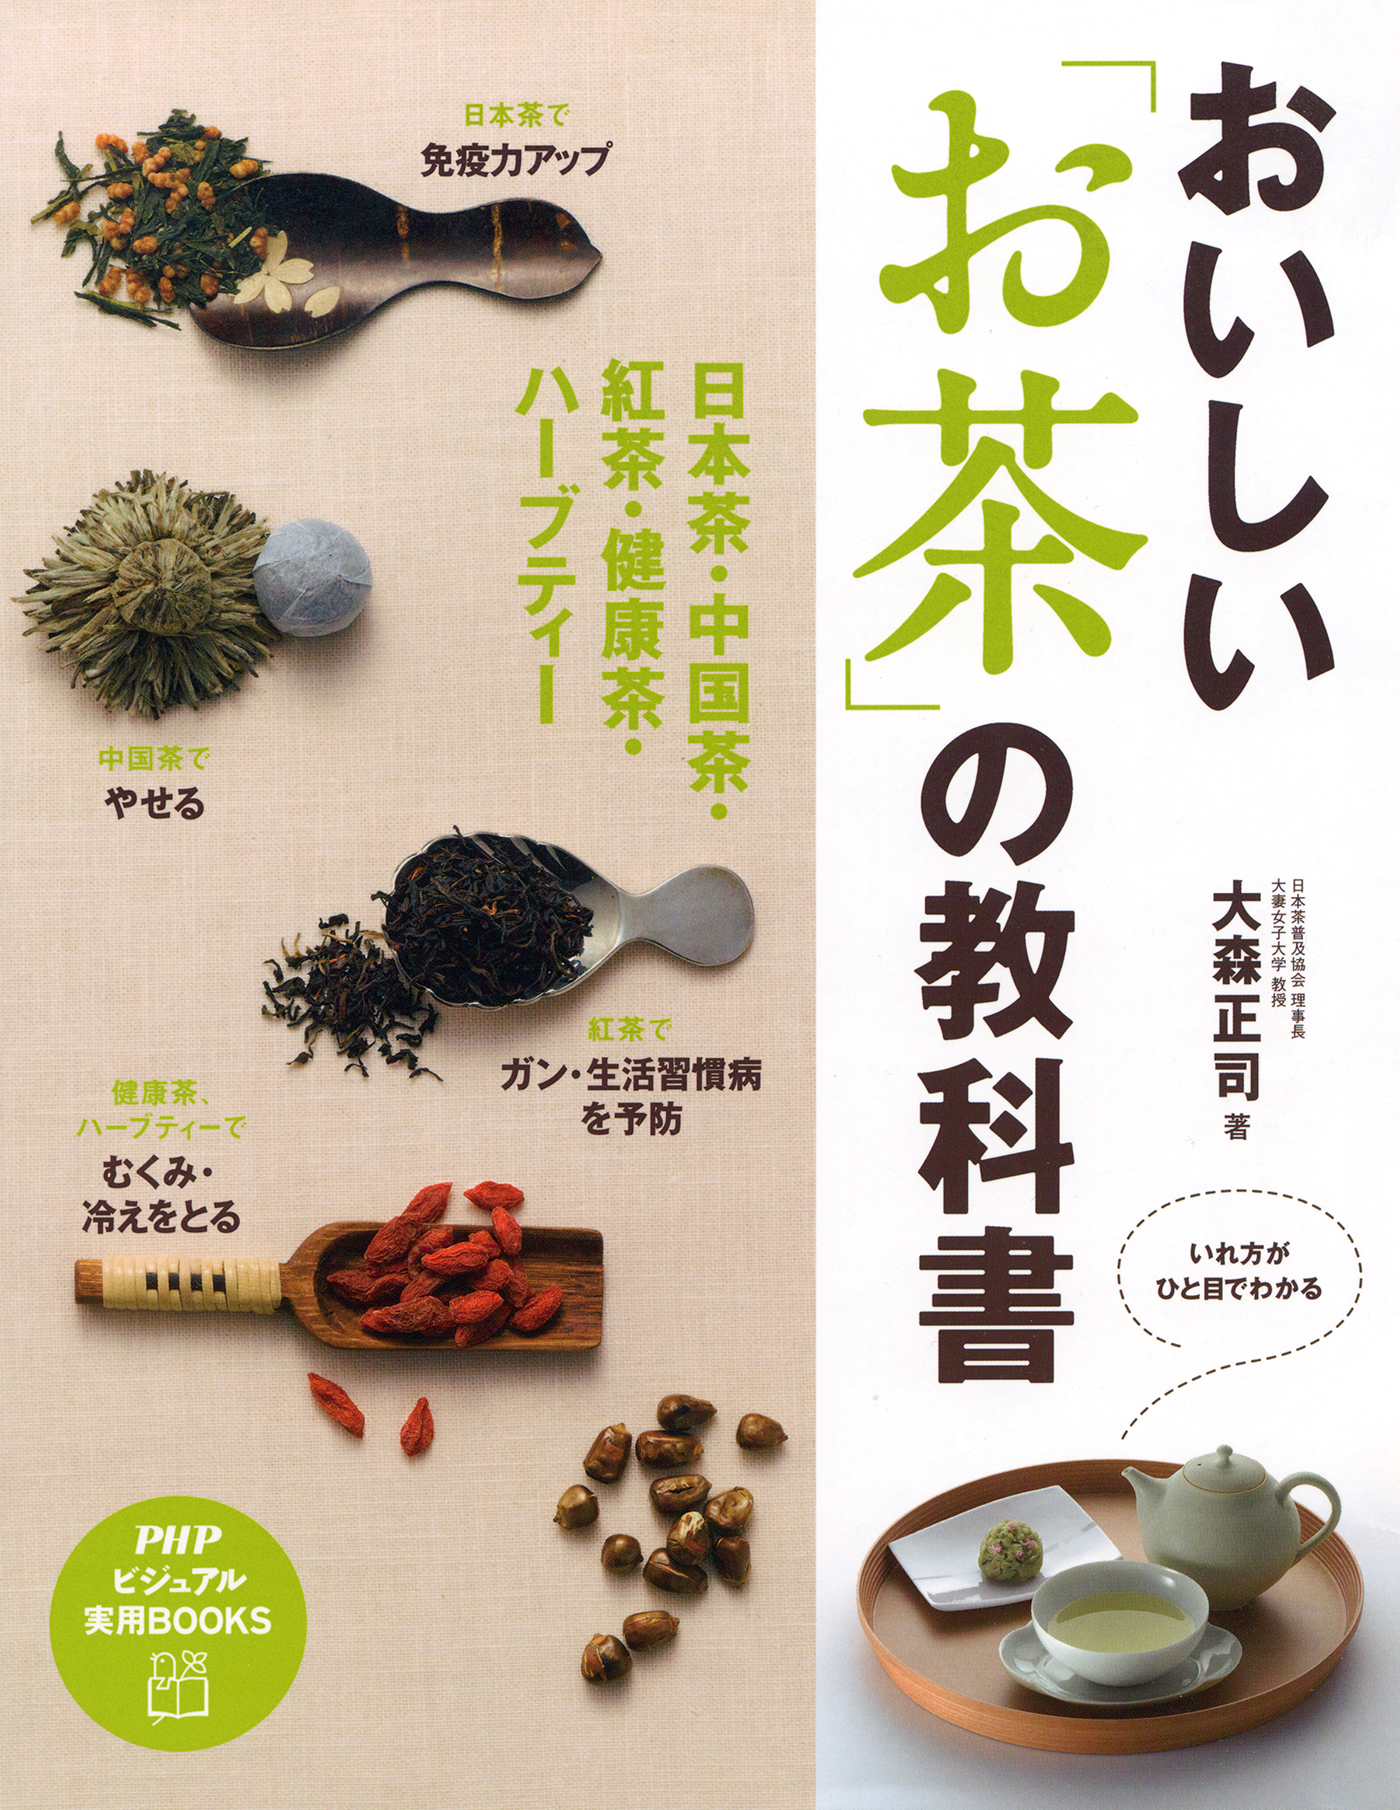 おトク情報がいっぱい！ x2966_おいしいお茶 いれよ ―日本茶中国茶紅茶ハーブティー～茶葉の種類や 湯の温度 入れるコツなど紹介  お茶受け菓子の作り方も